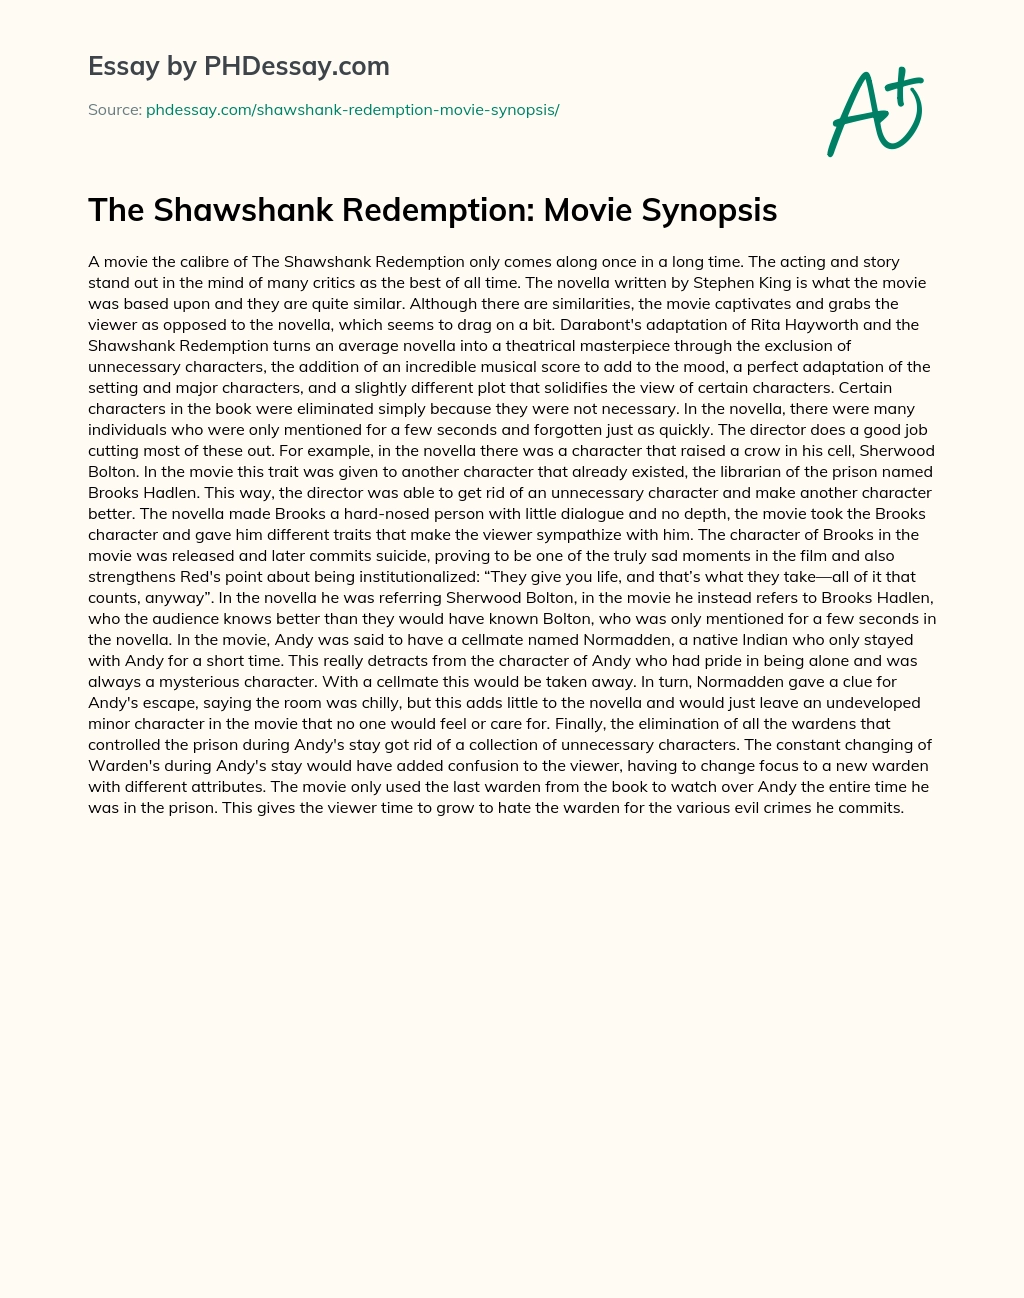 The Shawshank Redemption: Movie Synopsis essay